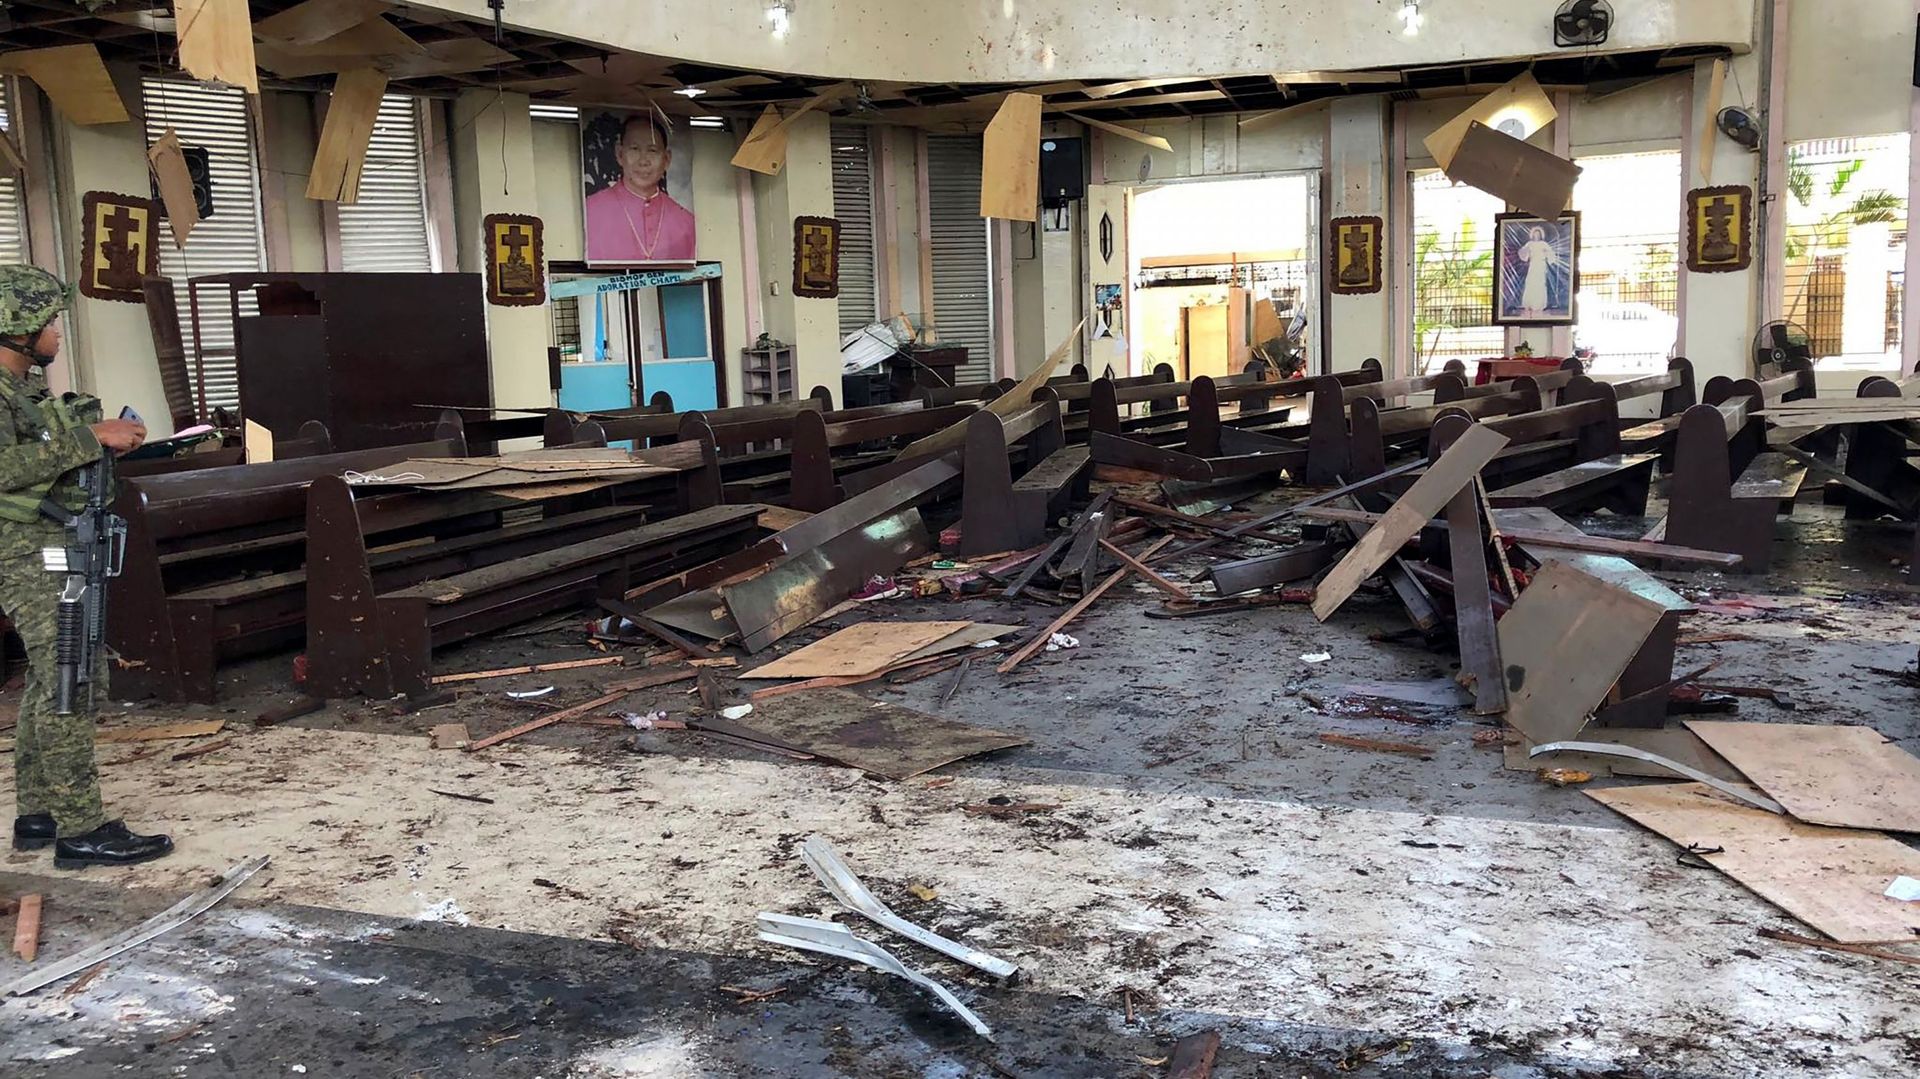 Le groupe Etat islamique revendique l'attentat contre la cathédrale de Jolo, aux Philippines